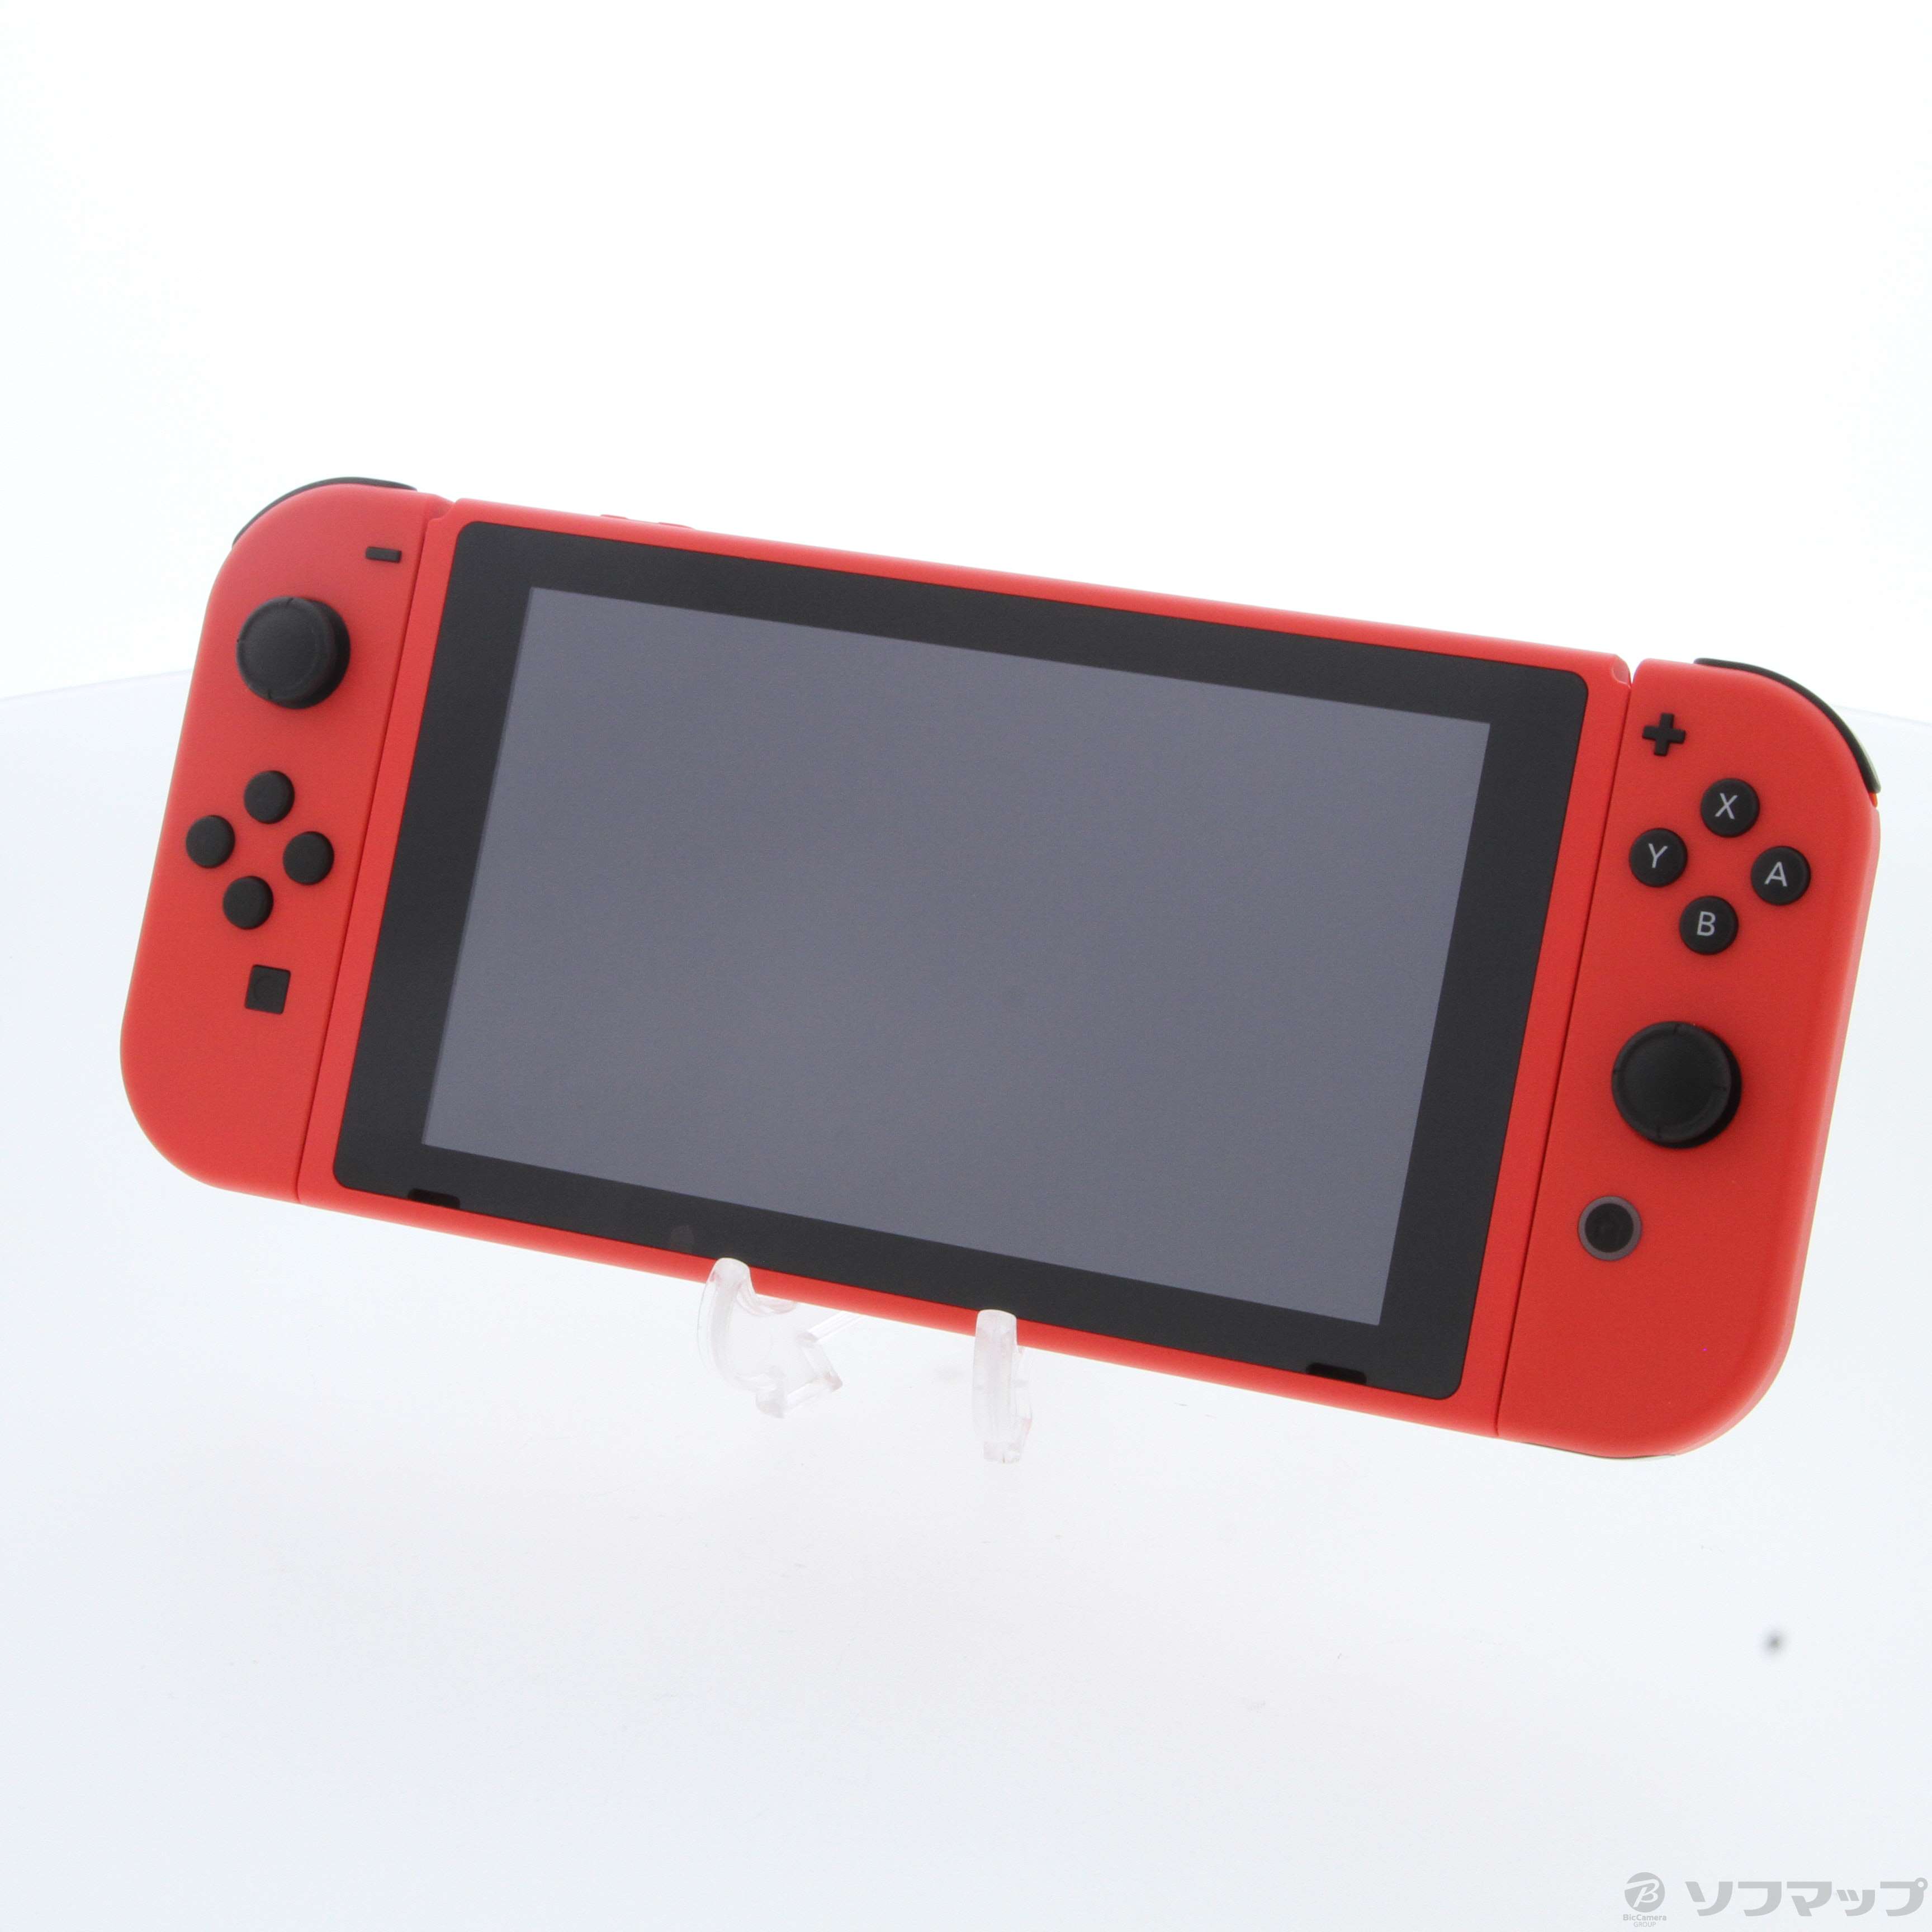 中古】Nintendo Switch マリオレッド×ブルー セット [2133054790882 